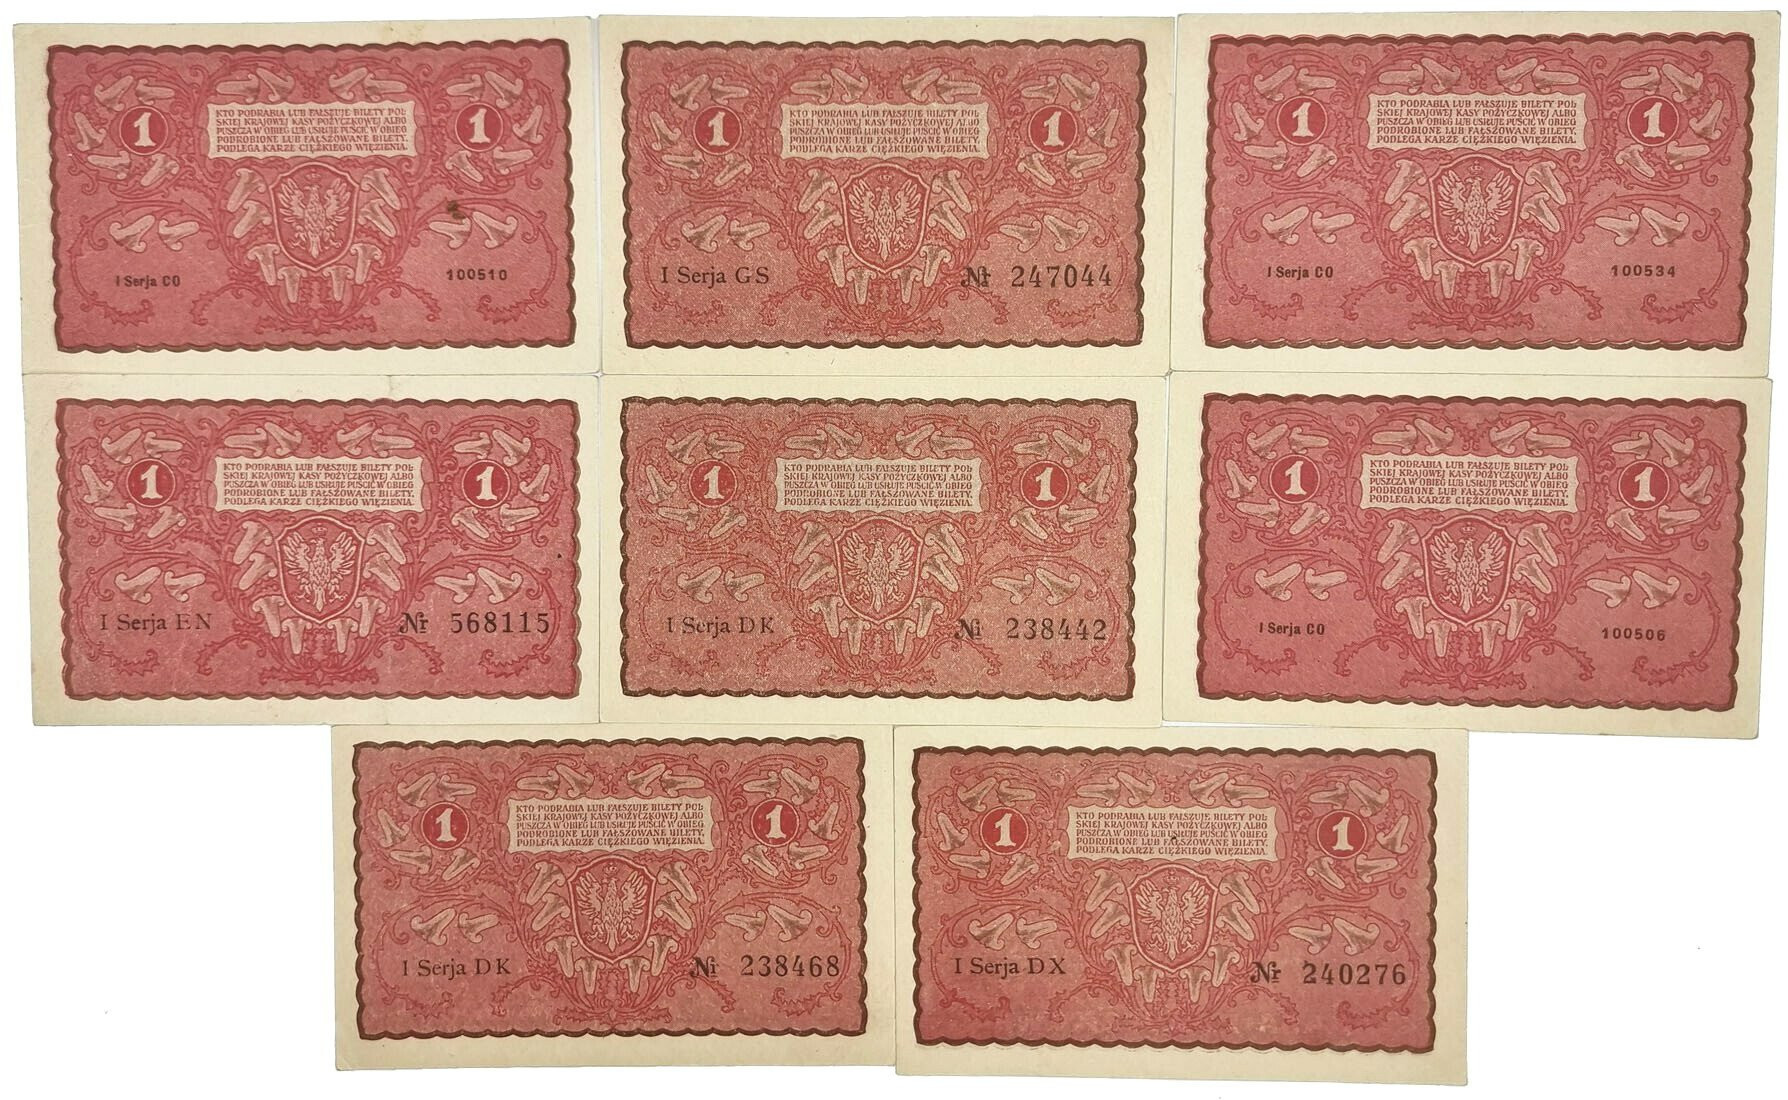 1 marka polska 1919 – zestaw 8 banknotów